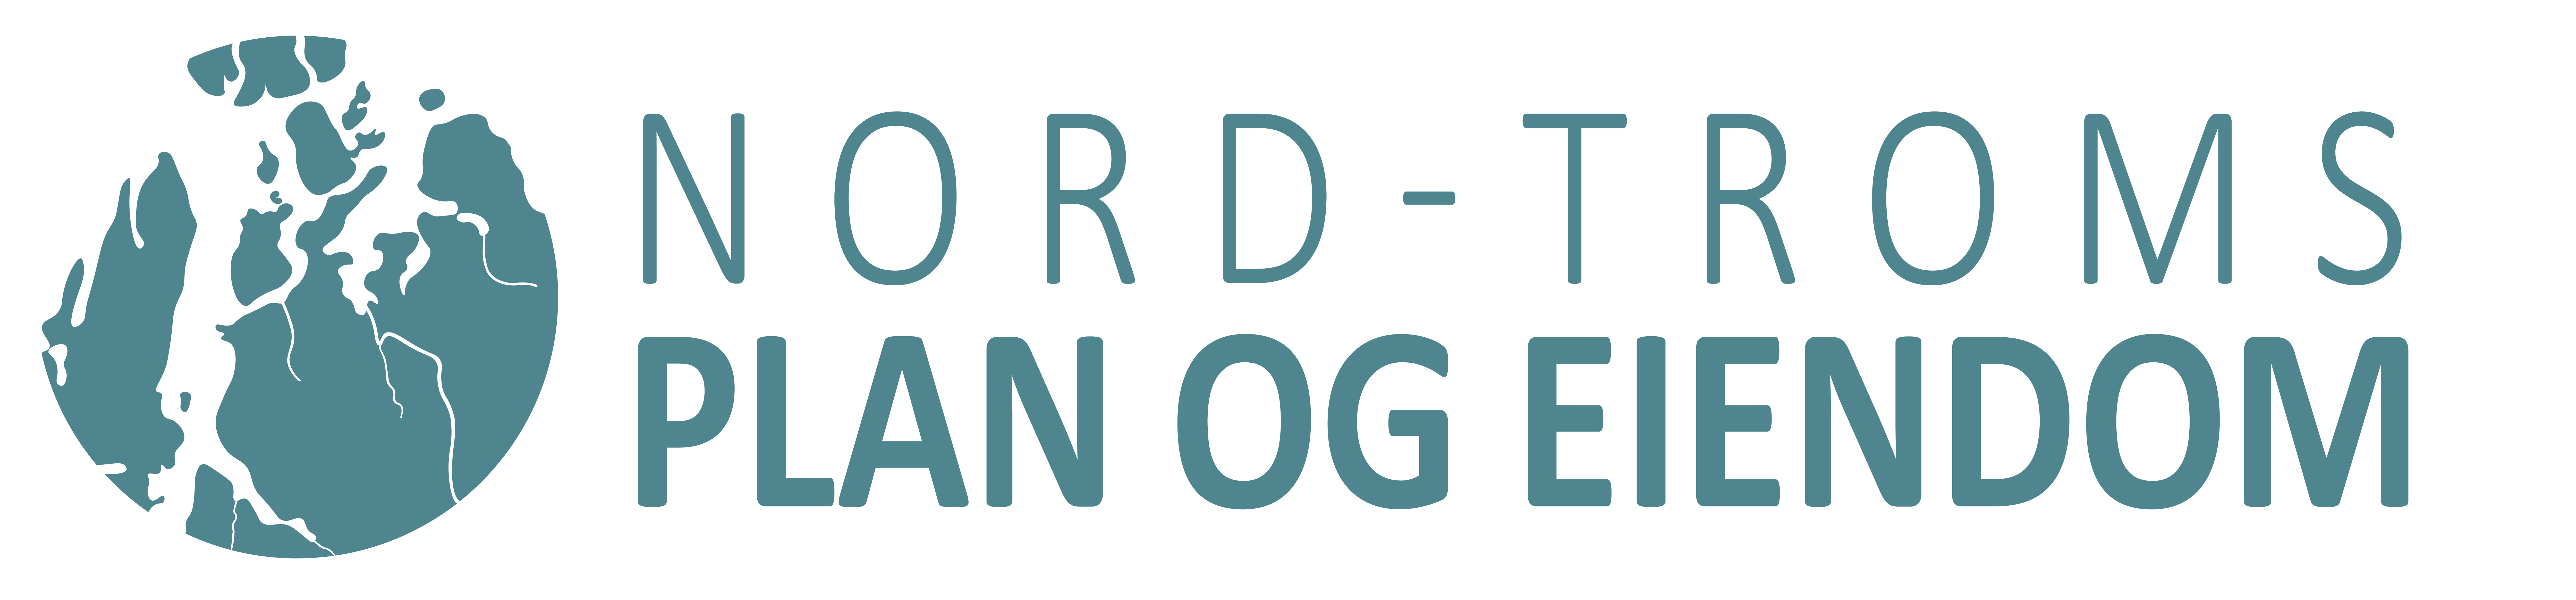 Nord-Troms Plan og Eiendom logo